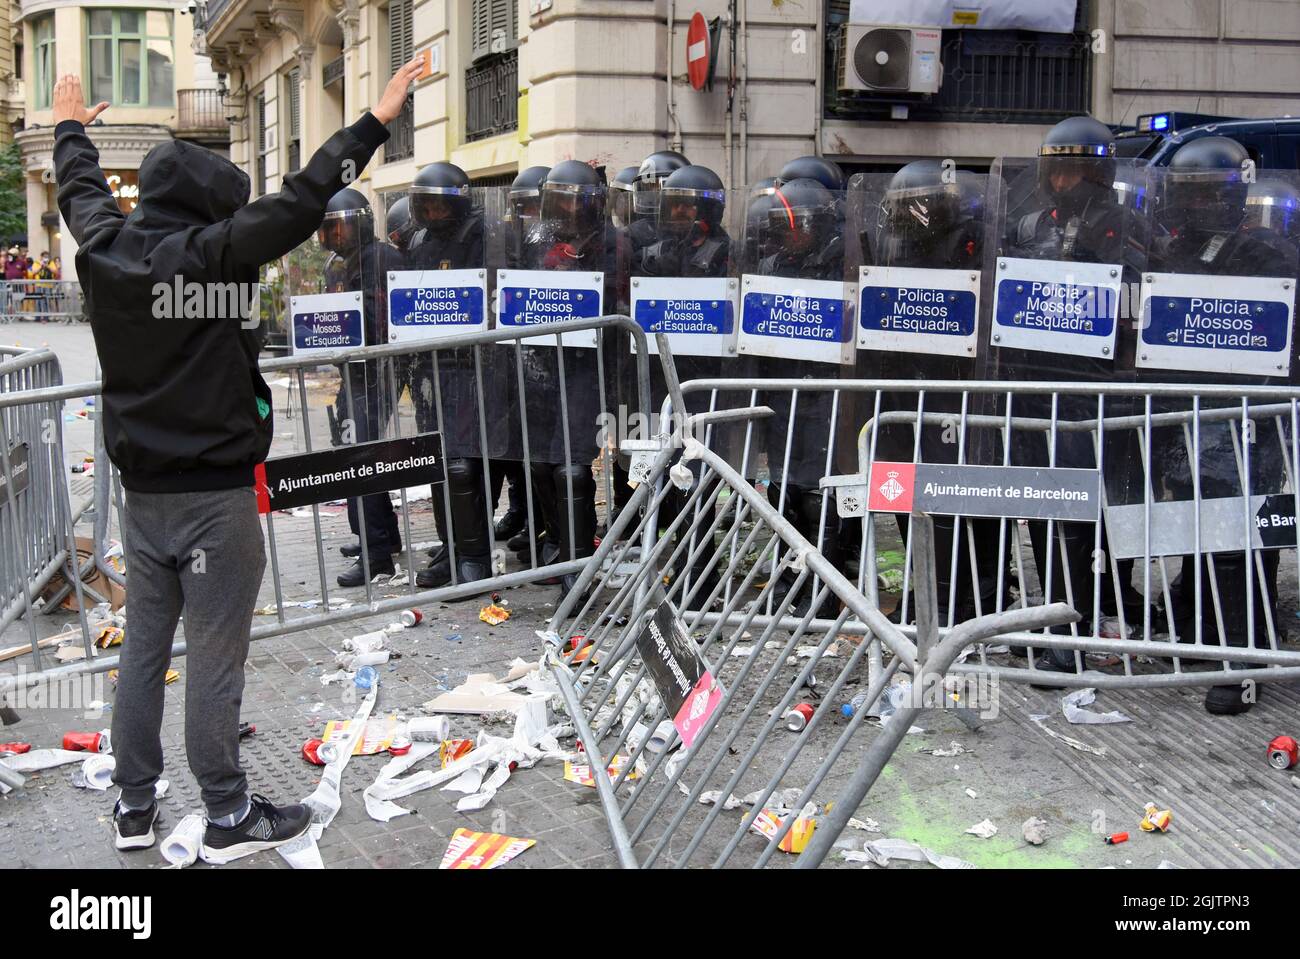 Ein Protestler mit hochhängenden Händen vor der katalanischen Polizei der Krawalle während der Demonstration des Nationaltages von Katalonien.Demonstranten, die sich für die Unabhängigkeit des Nationaltages von Katalonien eingesetzt haben, konfrontieren die katalanische Polizei (Mossos d'Escuadra), weil sie Farben, Rauch, einige Dosen, Feuerlöscher, Flaschen und Eisenstangen bei der spanischen Polizei in ihrem Hauptquartier in Barcelona aus Protest gegen die Anschuldigungen der Polizei, die im Rahmen des illegalen Referendums von 2017 erhoben wurden. (Foto von Ramon Costa / SOPA Images/Sipa USA) Stockfoto